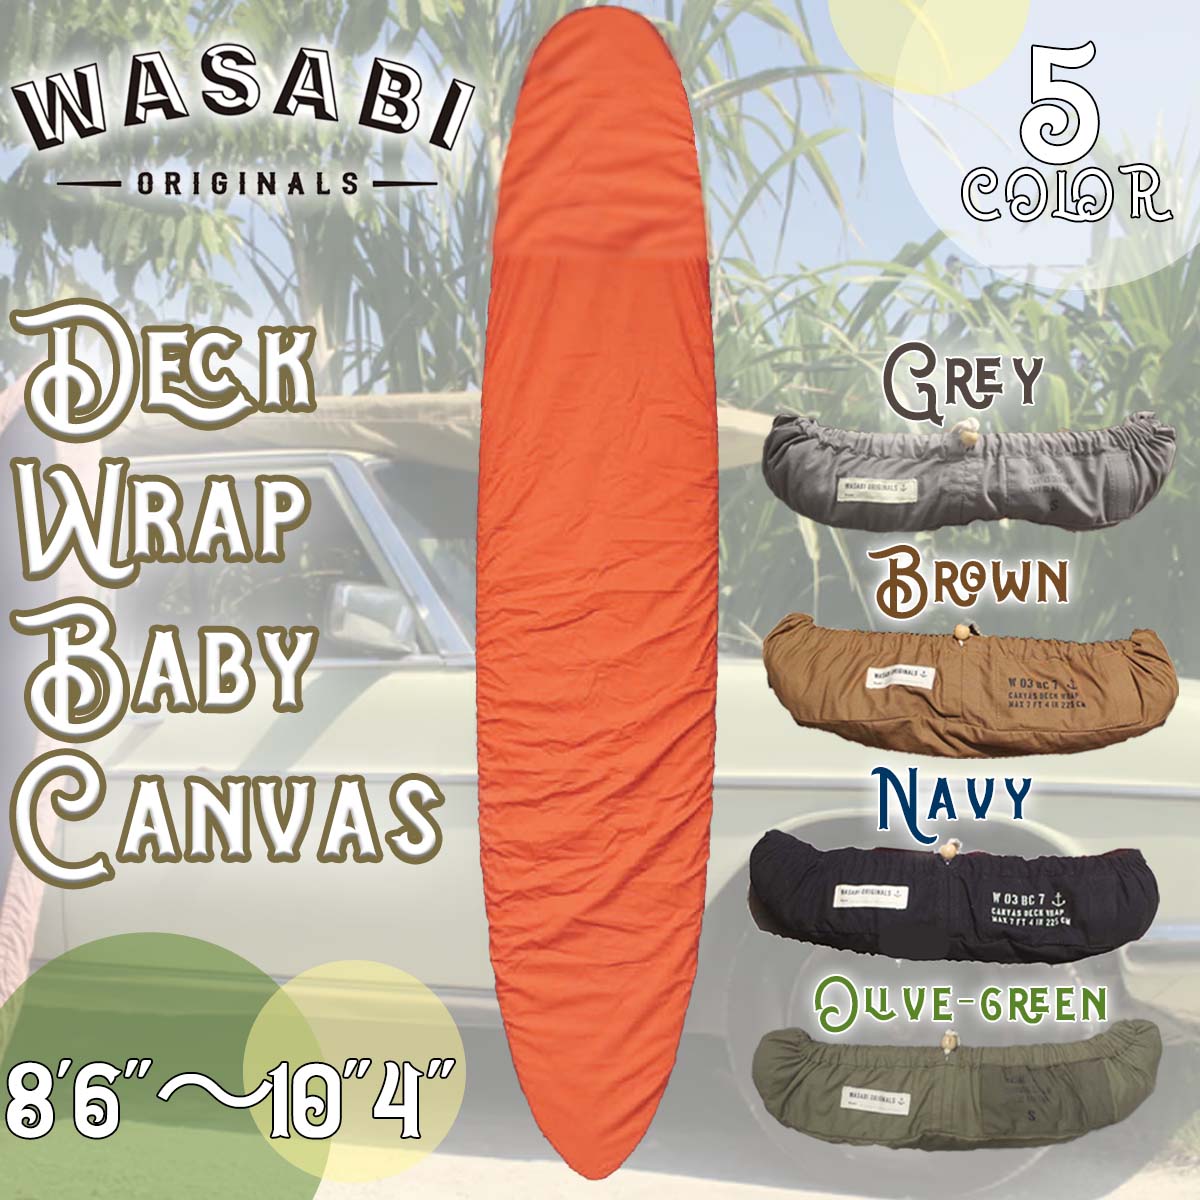 24年6月中旬〜7月中旬出荷 予約 24 Wasabi originals ワサビオリジナル デッキカバー Baby Canvas Deck wrap  Lサイズ ボードカバー 板 ロングボード 日本正規品